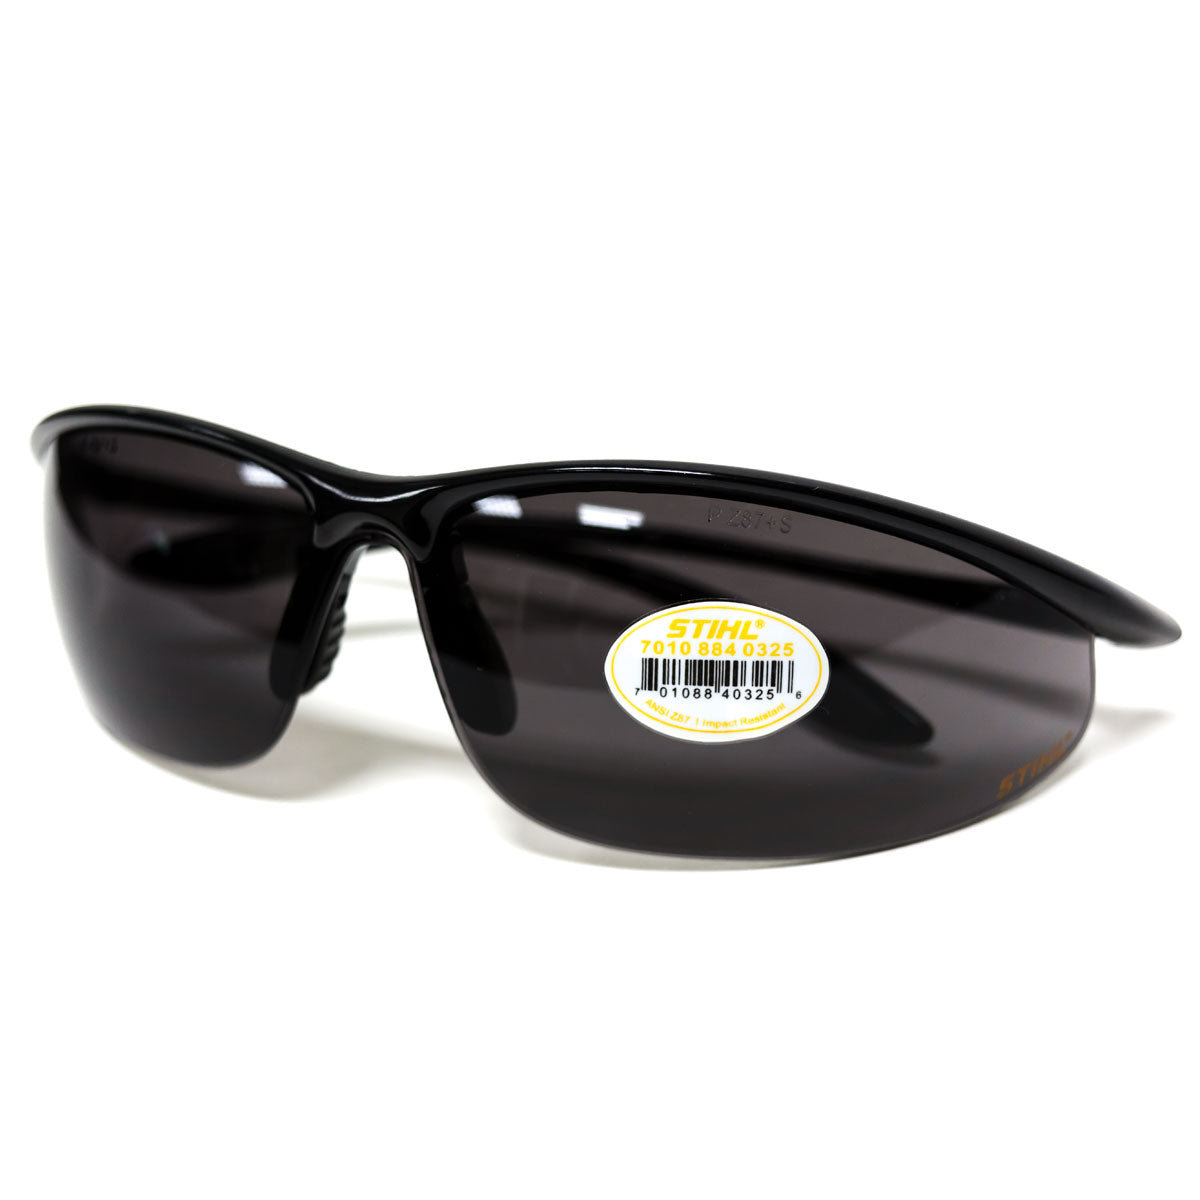 Stihl 7010 884 0325 Gafas de seguridad con marco negro elegante y lentes grises ahumados